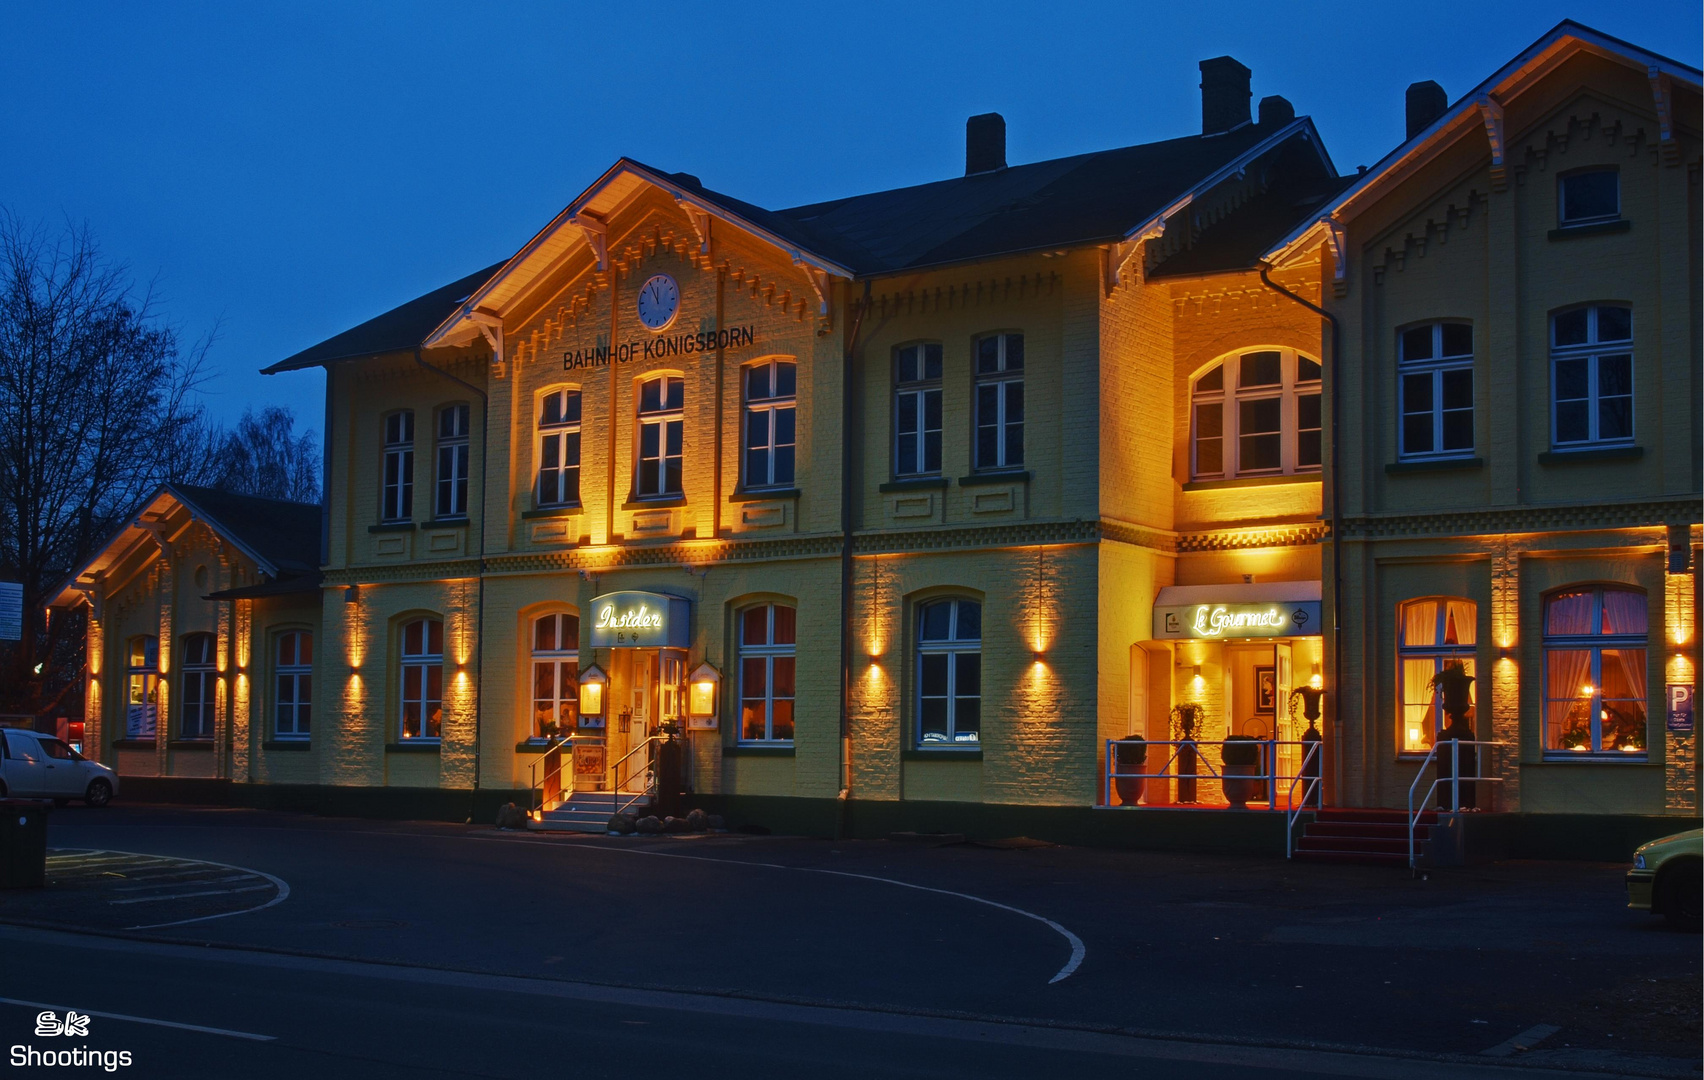 Bahnhof Unna Königsborn